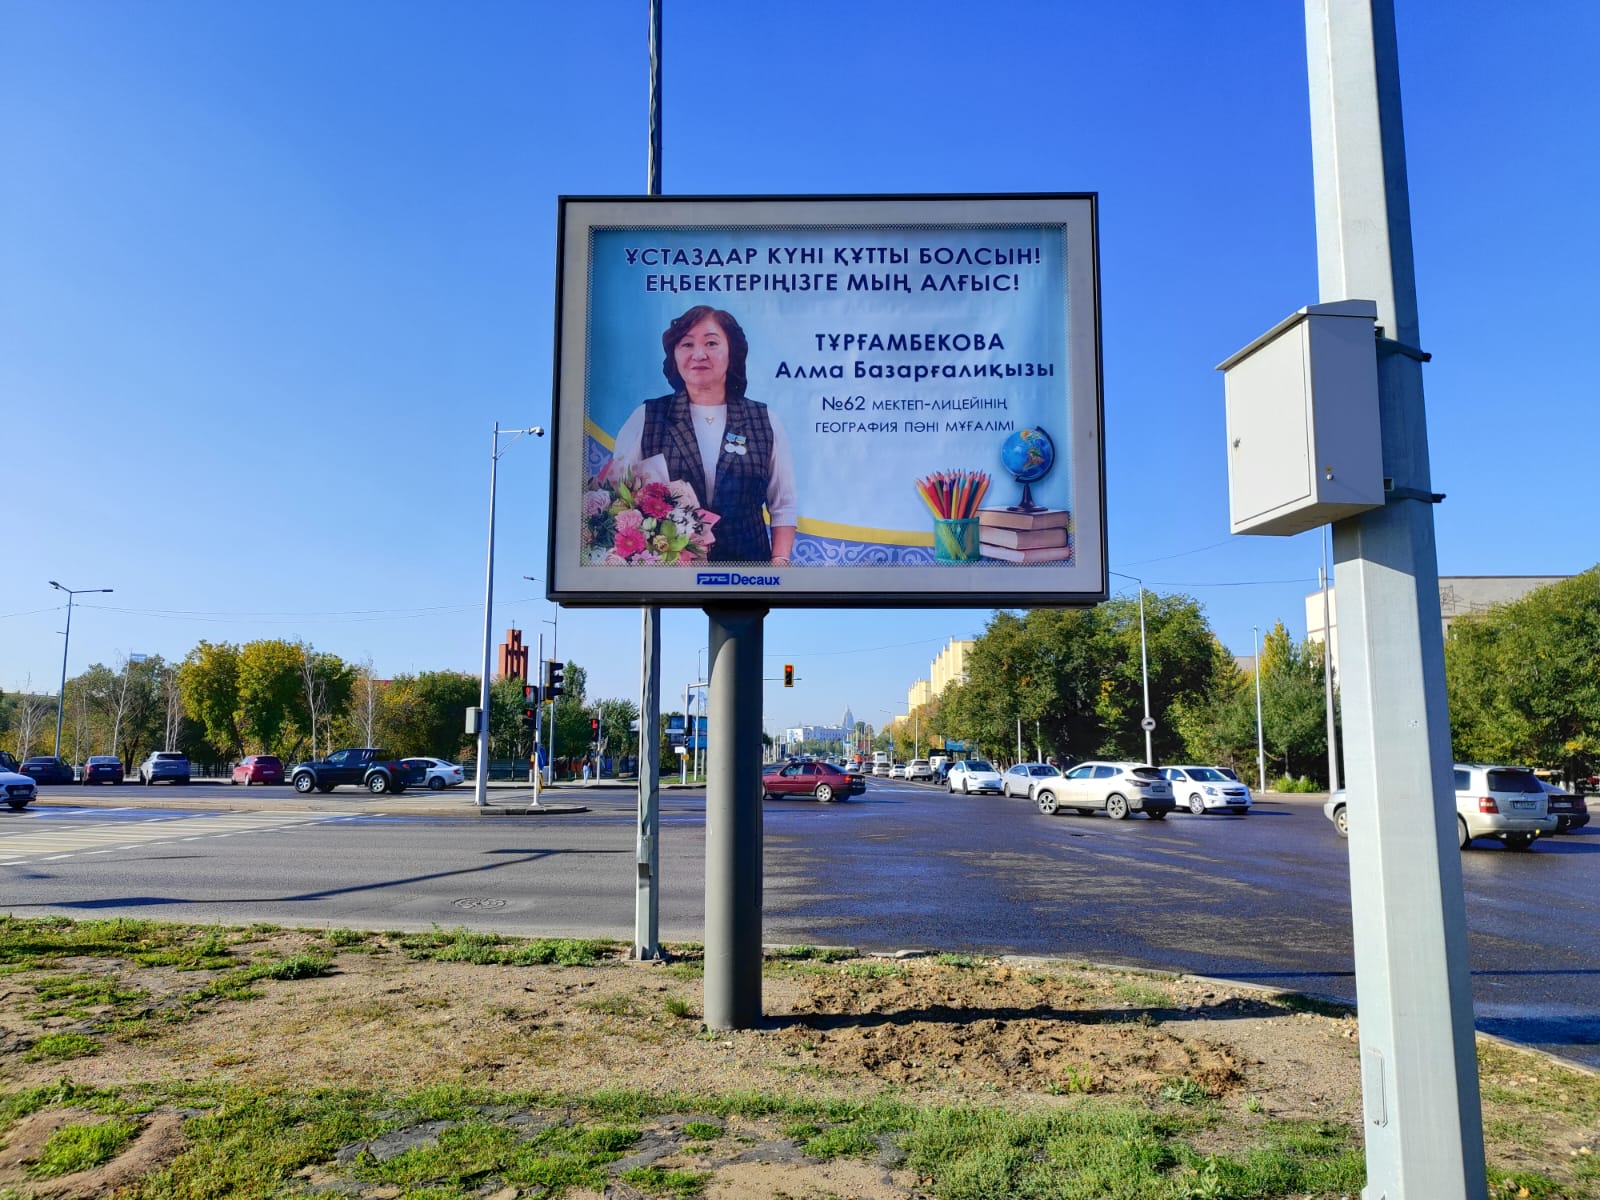 Фотографии лучших педагогов города появились на билбордах в Астане